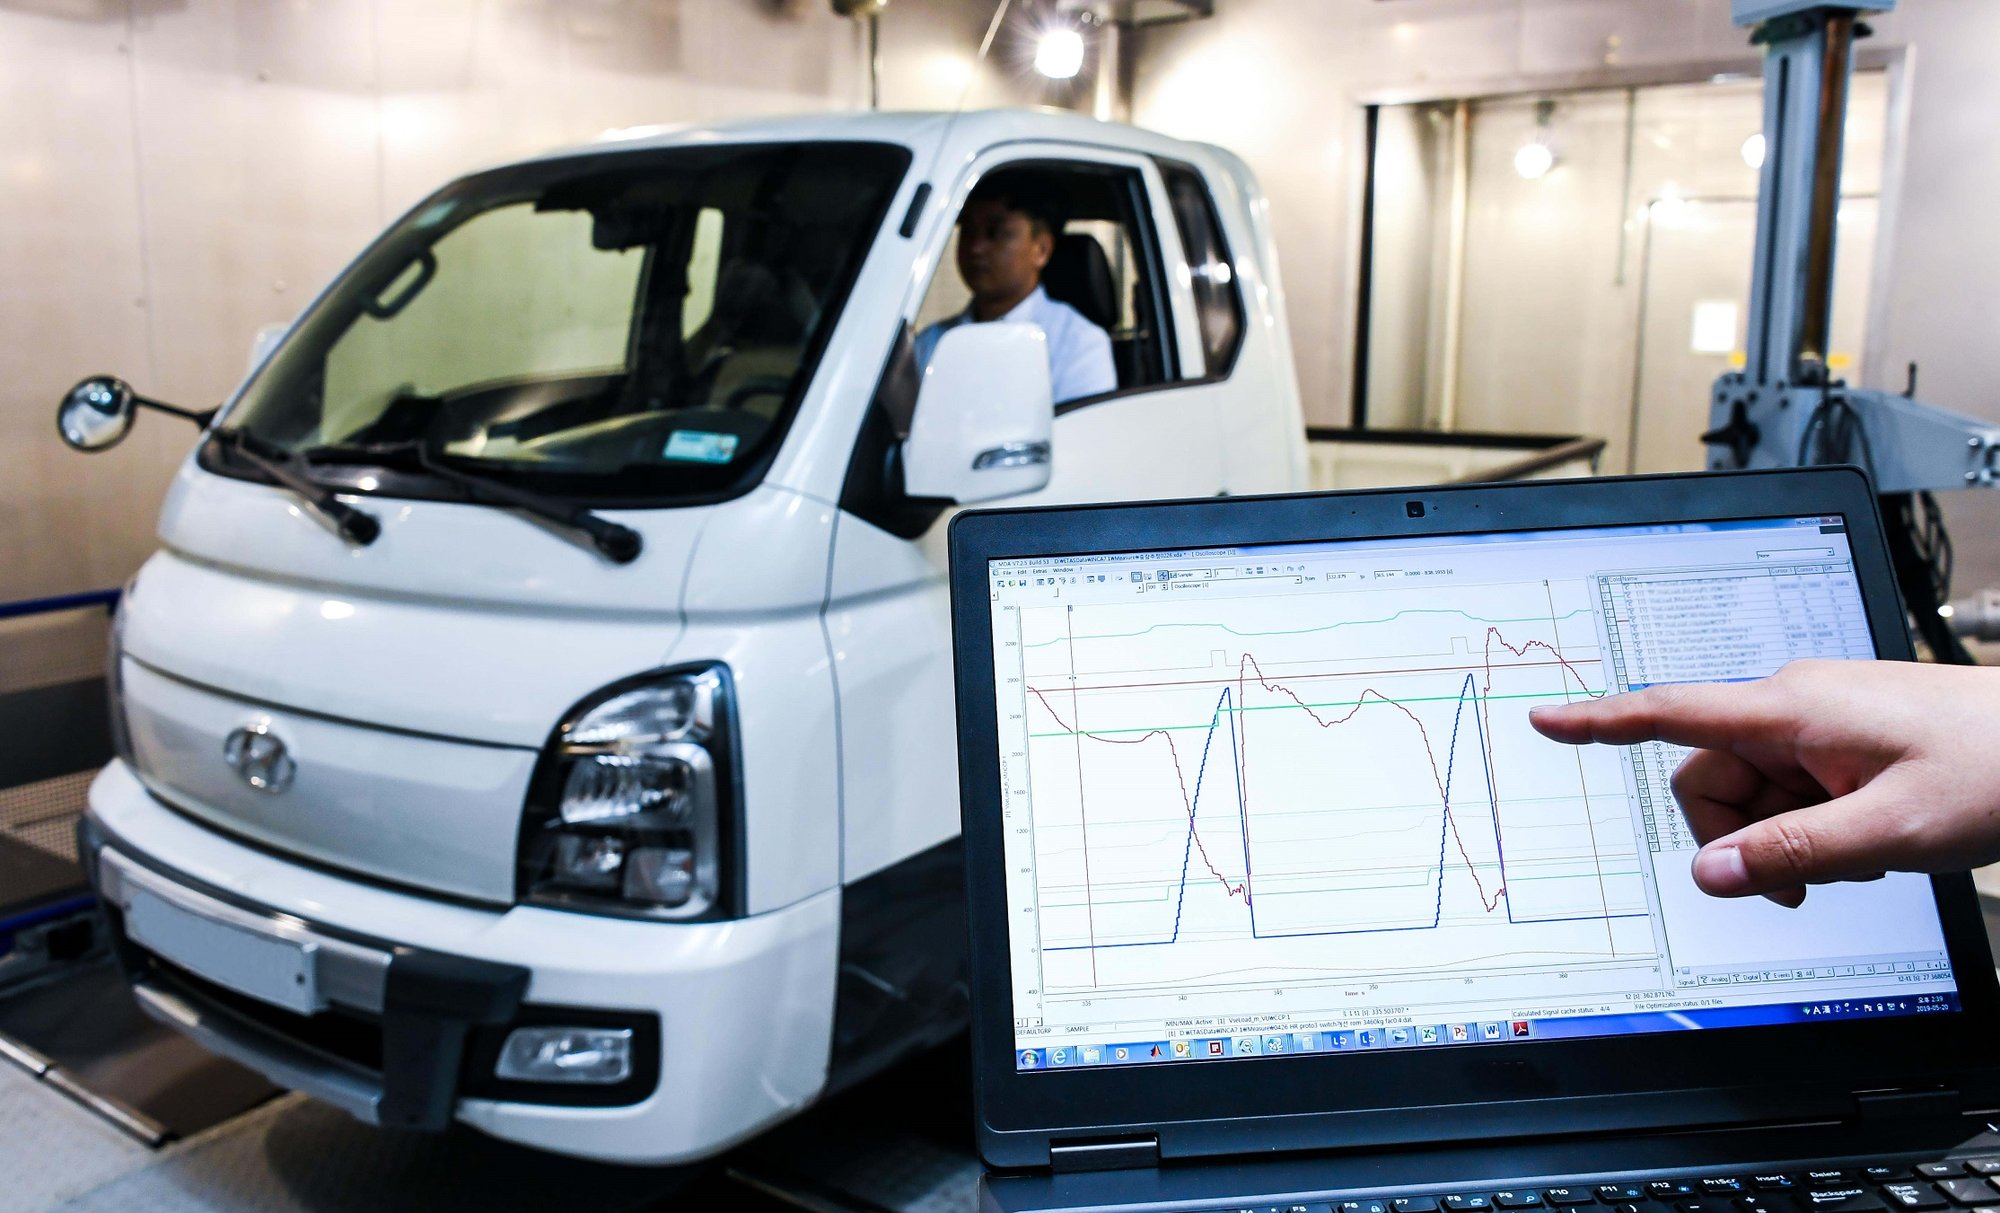 Lehké užitkové elektromobily Hyundai budou přizpůsobovat svoji jízdu aktuální hmotnosti